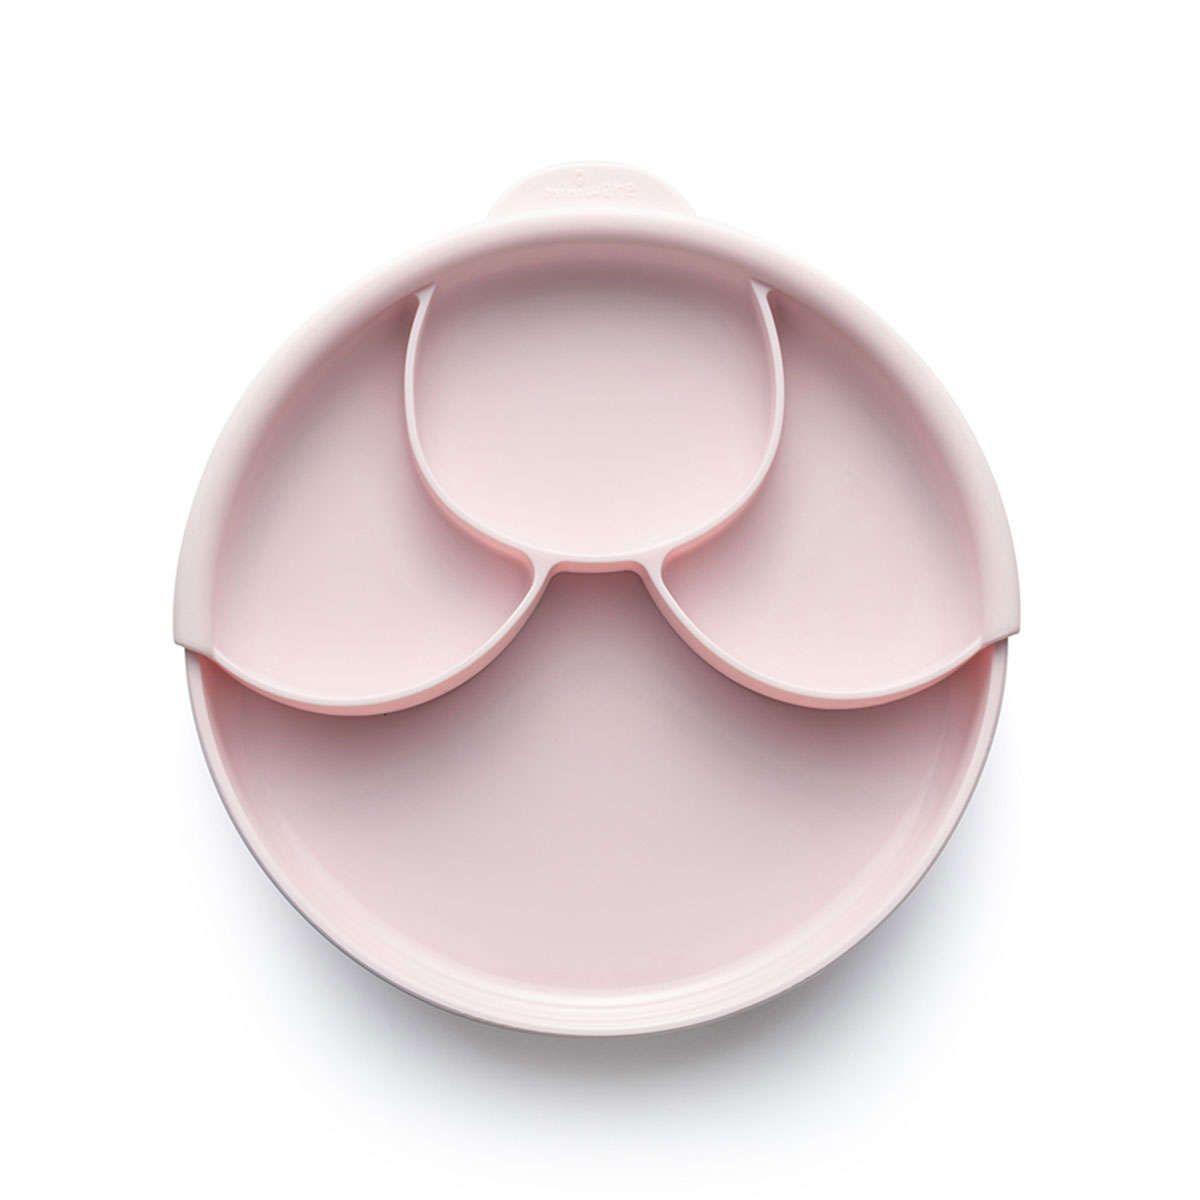 Πιάτο φαγητού με χώρισμα σιλικόνης Des.12 pink miniware